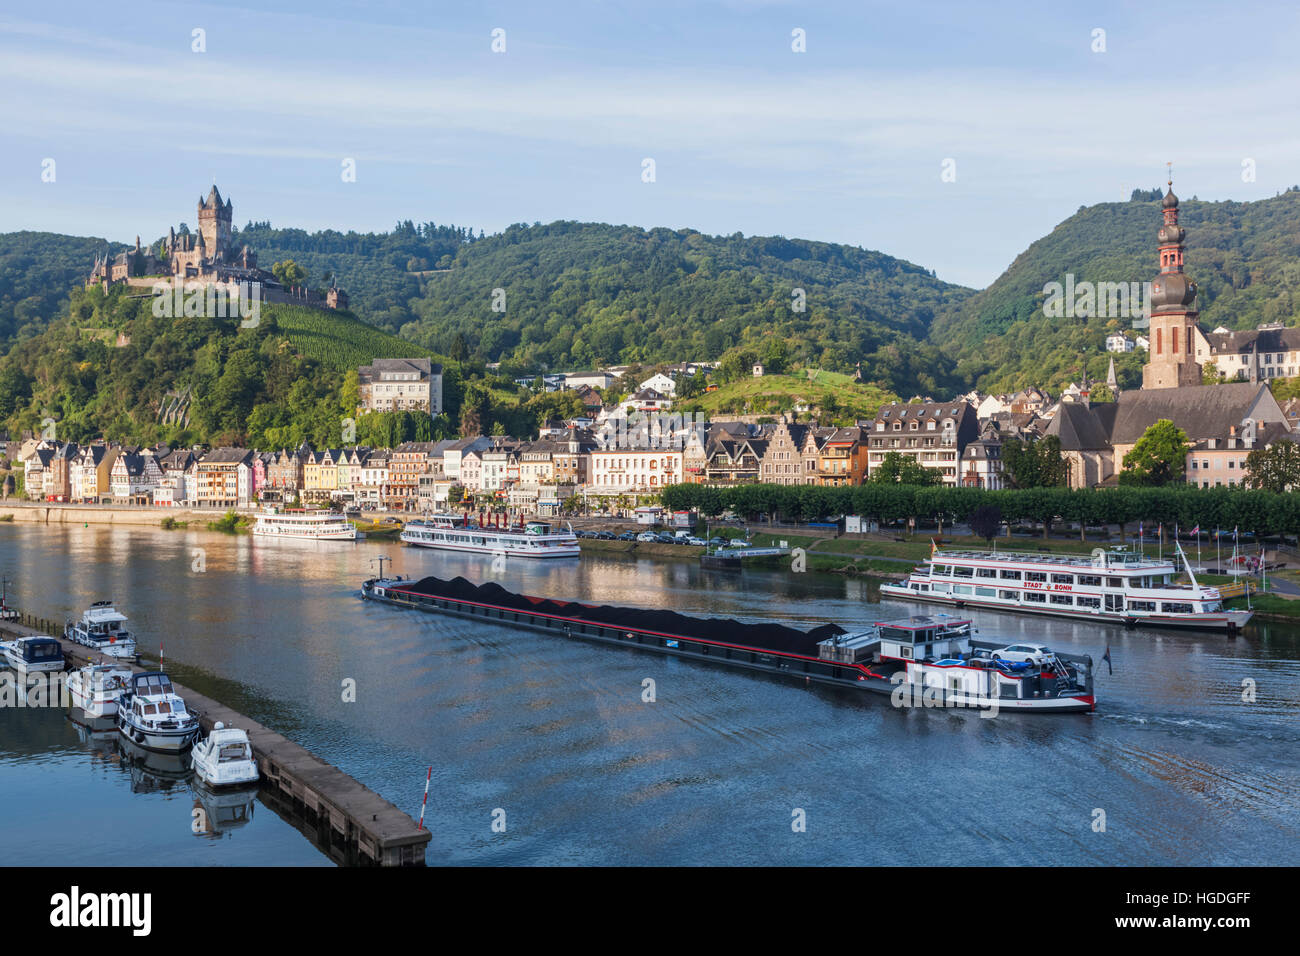 Germany, Rhineland-Palatinate, Moselle, Cochem Stock Photo